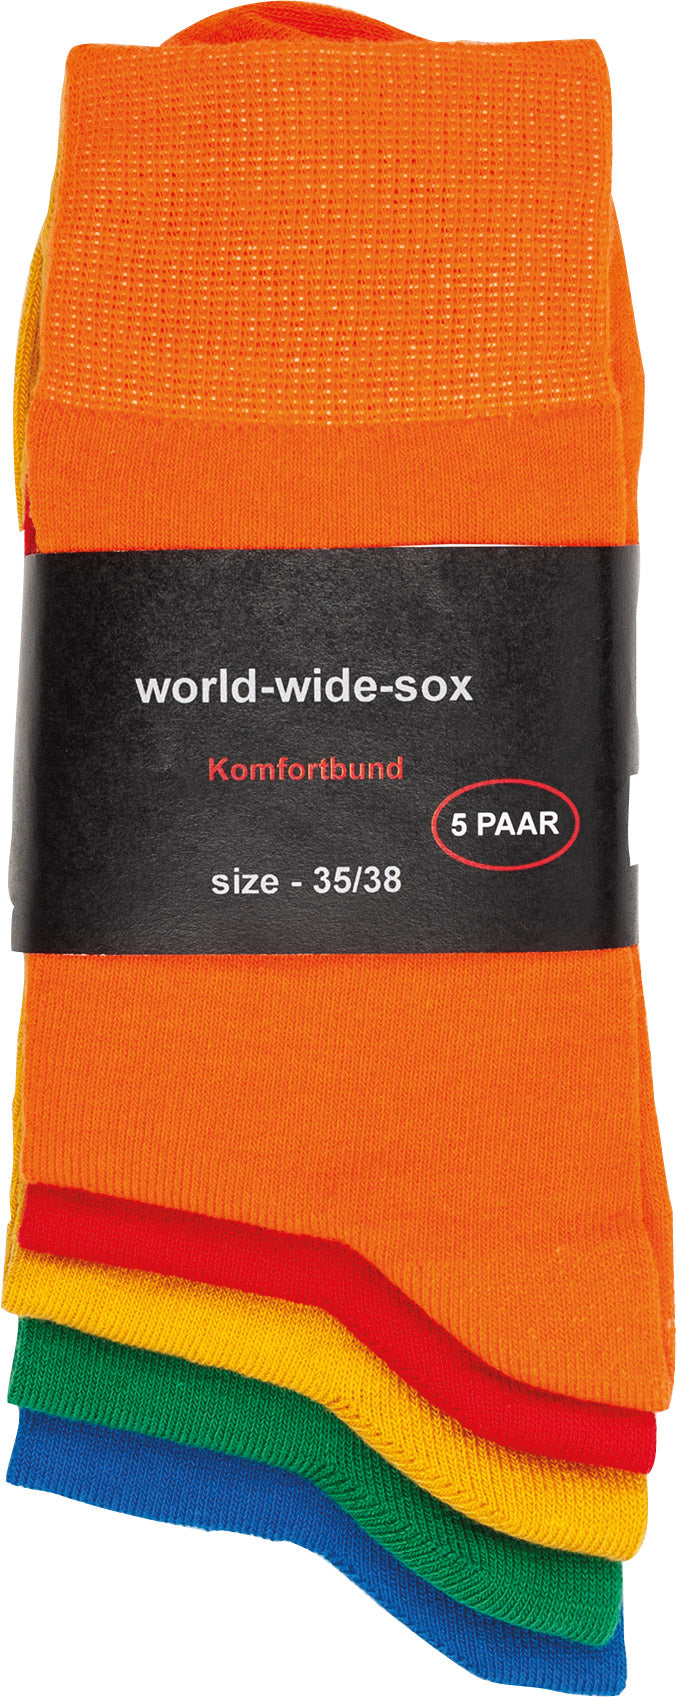 5 pares de calcetines de algodón de colores para hombre y mujer.Borde confort